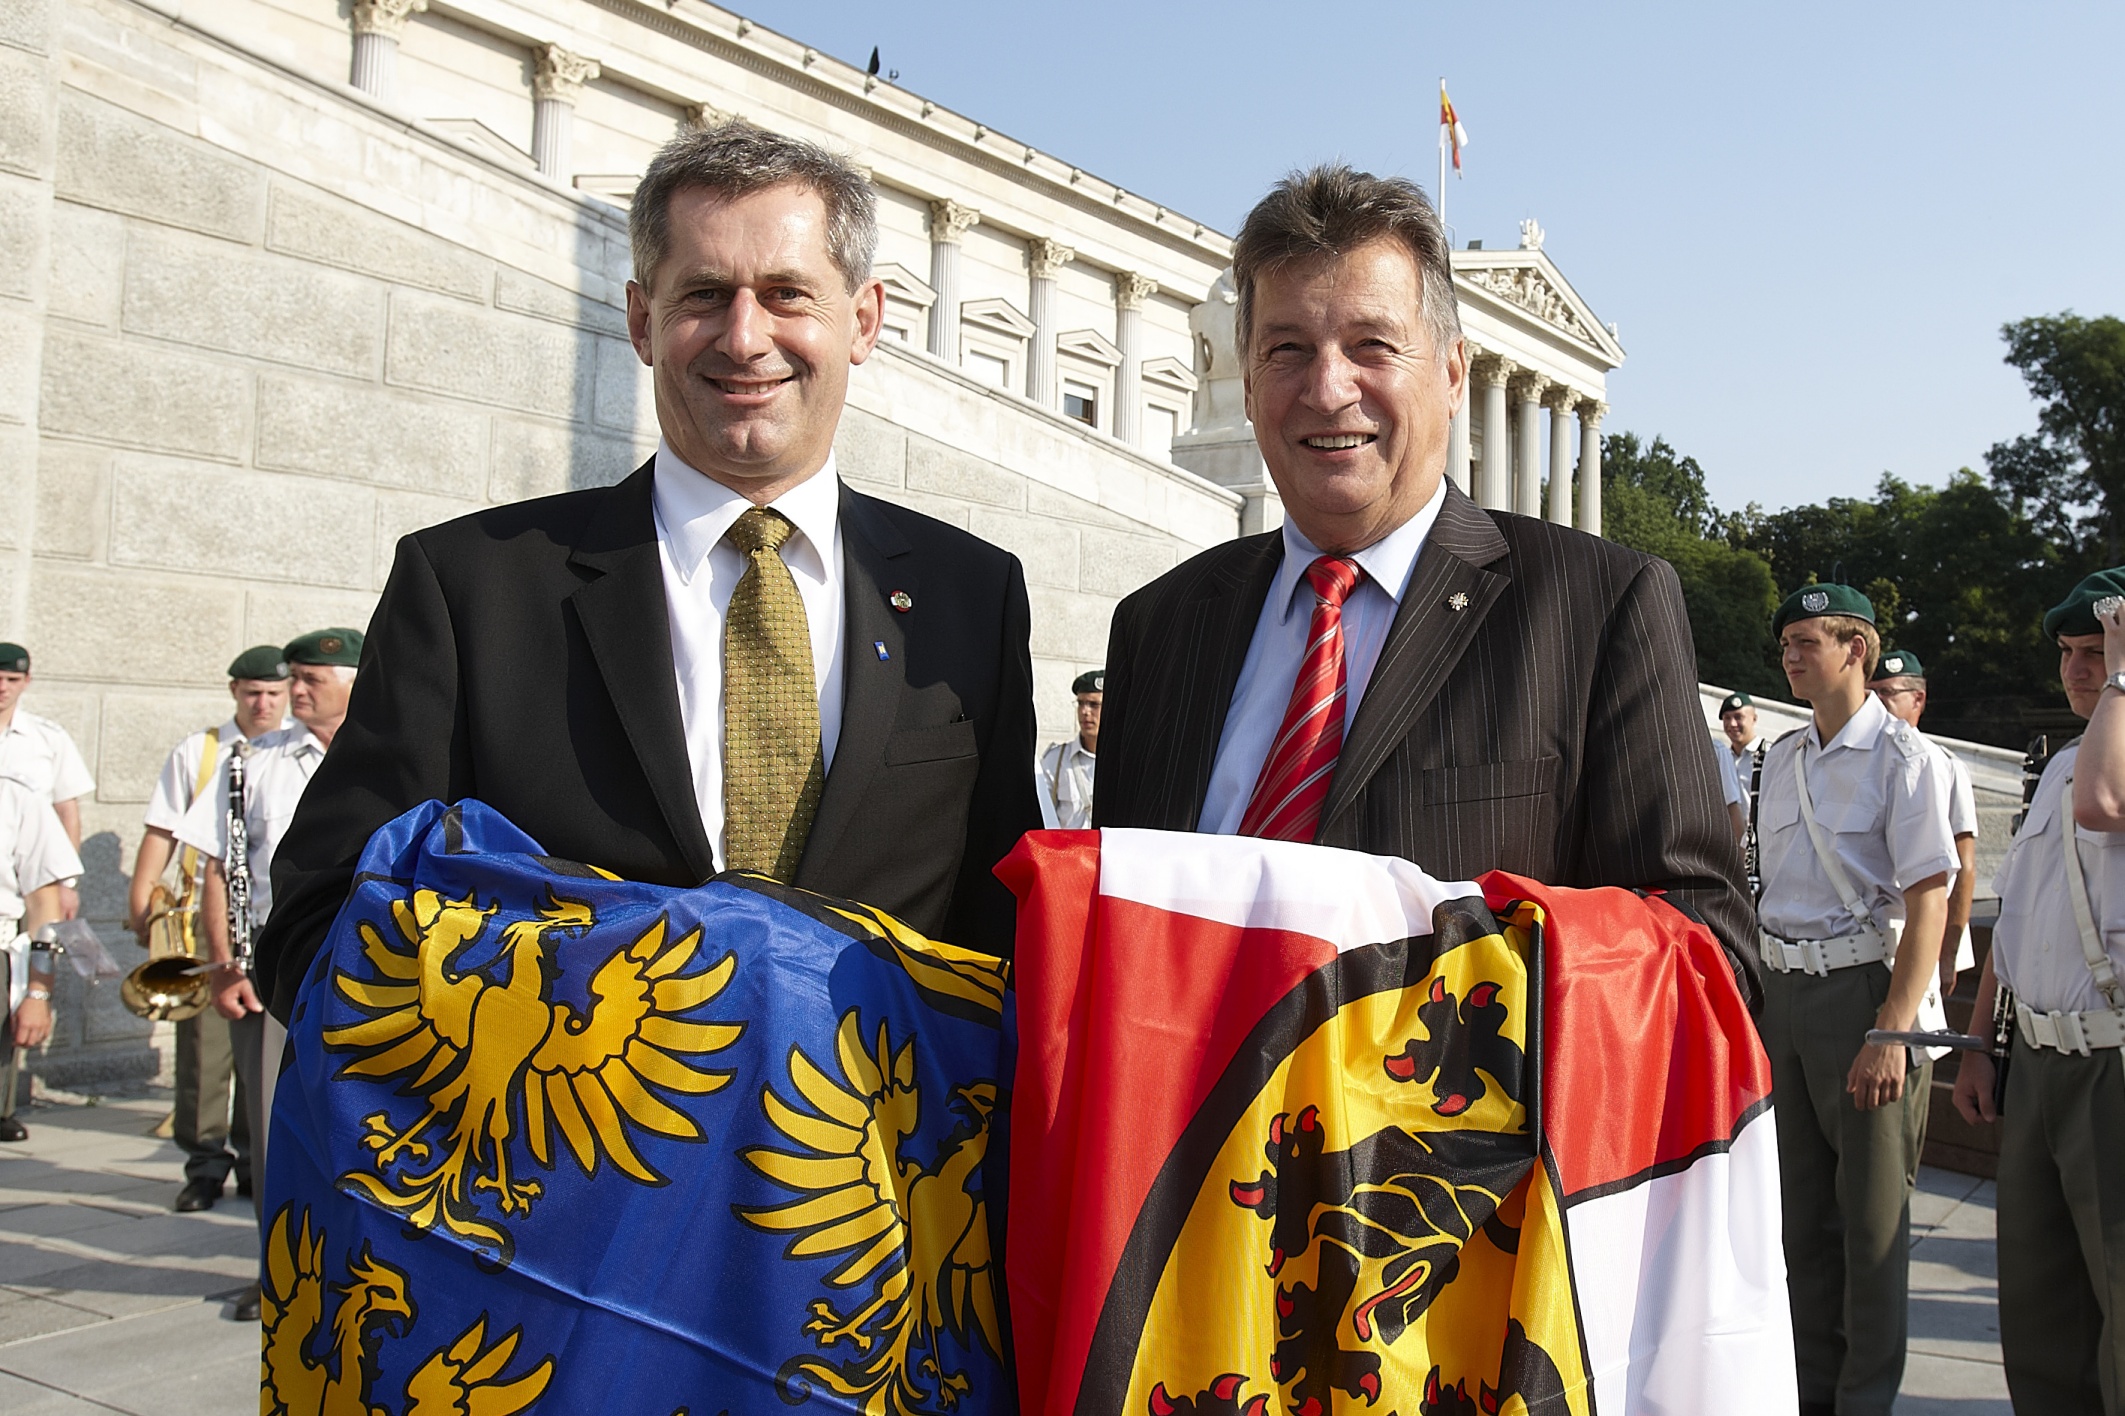 v.links: Bundesratspräsident Martin Preineder mit dem scheidenden Bundesratspräsidenten Peter Mitterer bei dem Austausch der Flaggen der Bundesländer Niederösterreichs und Kärnten